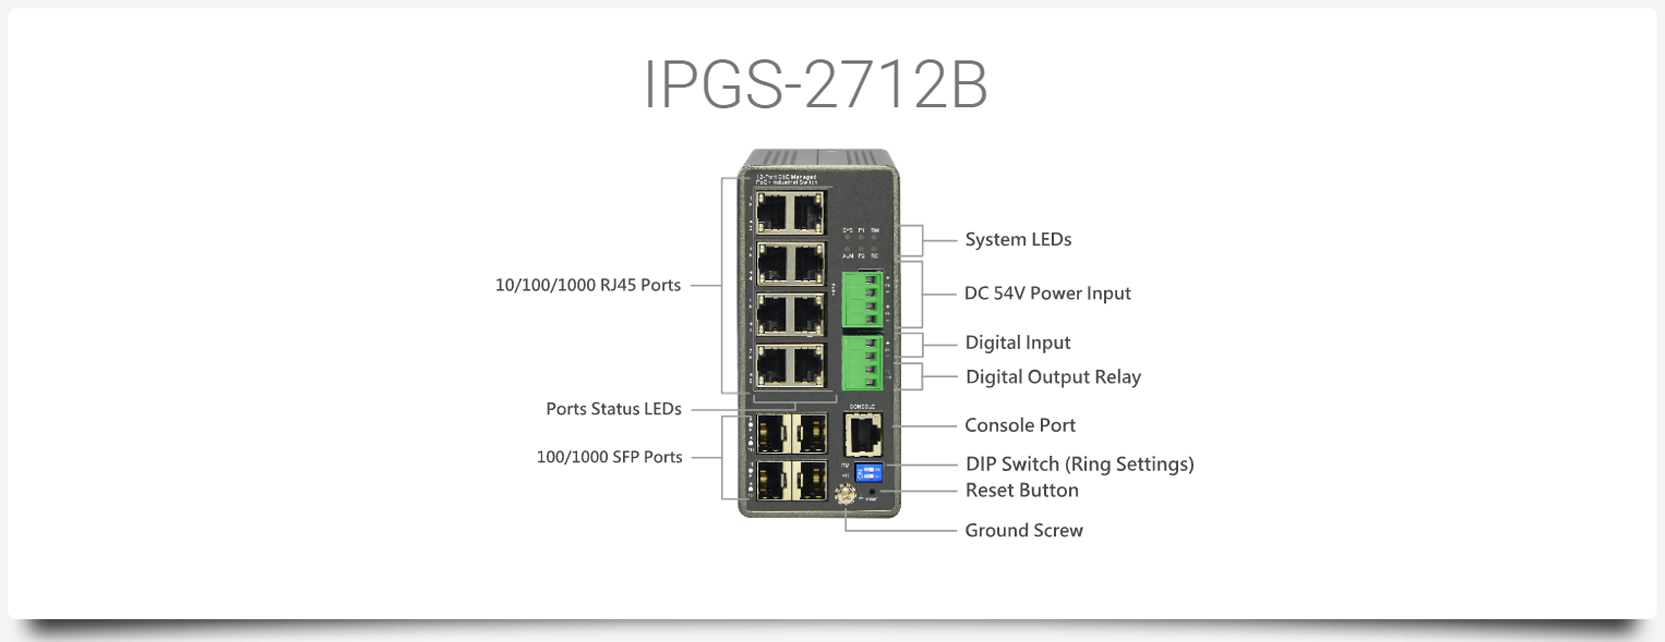 IPGS-2712B